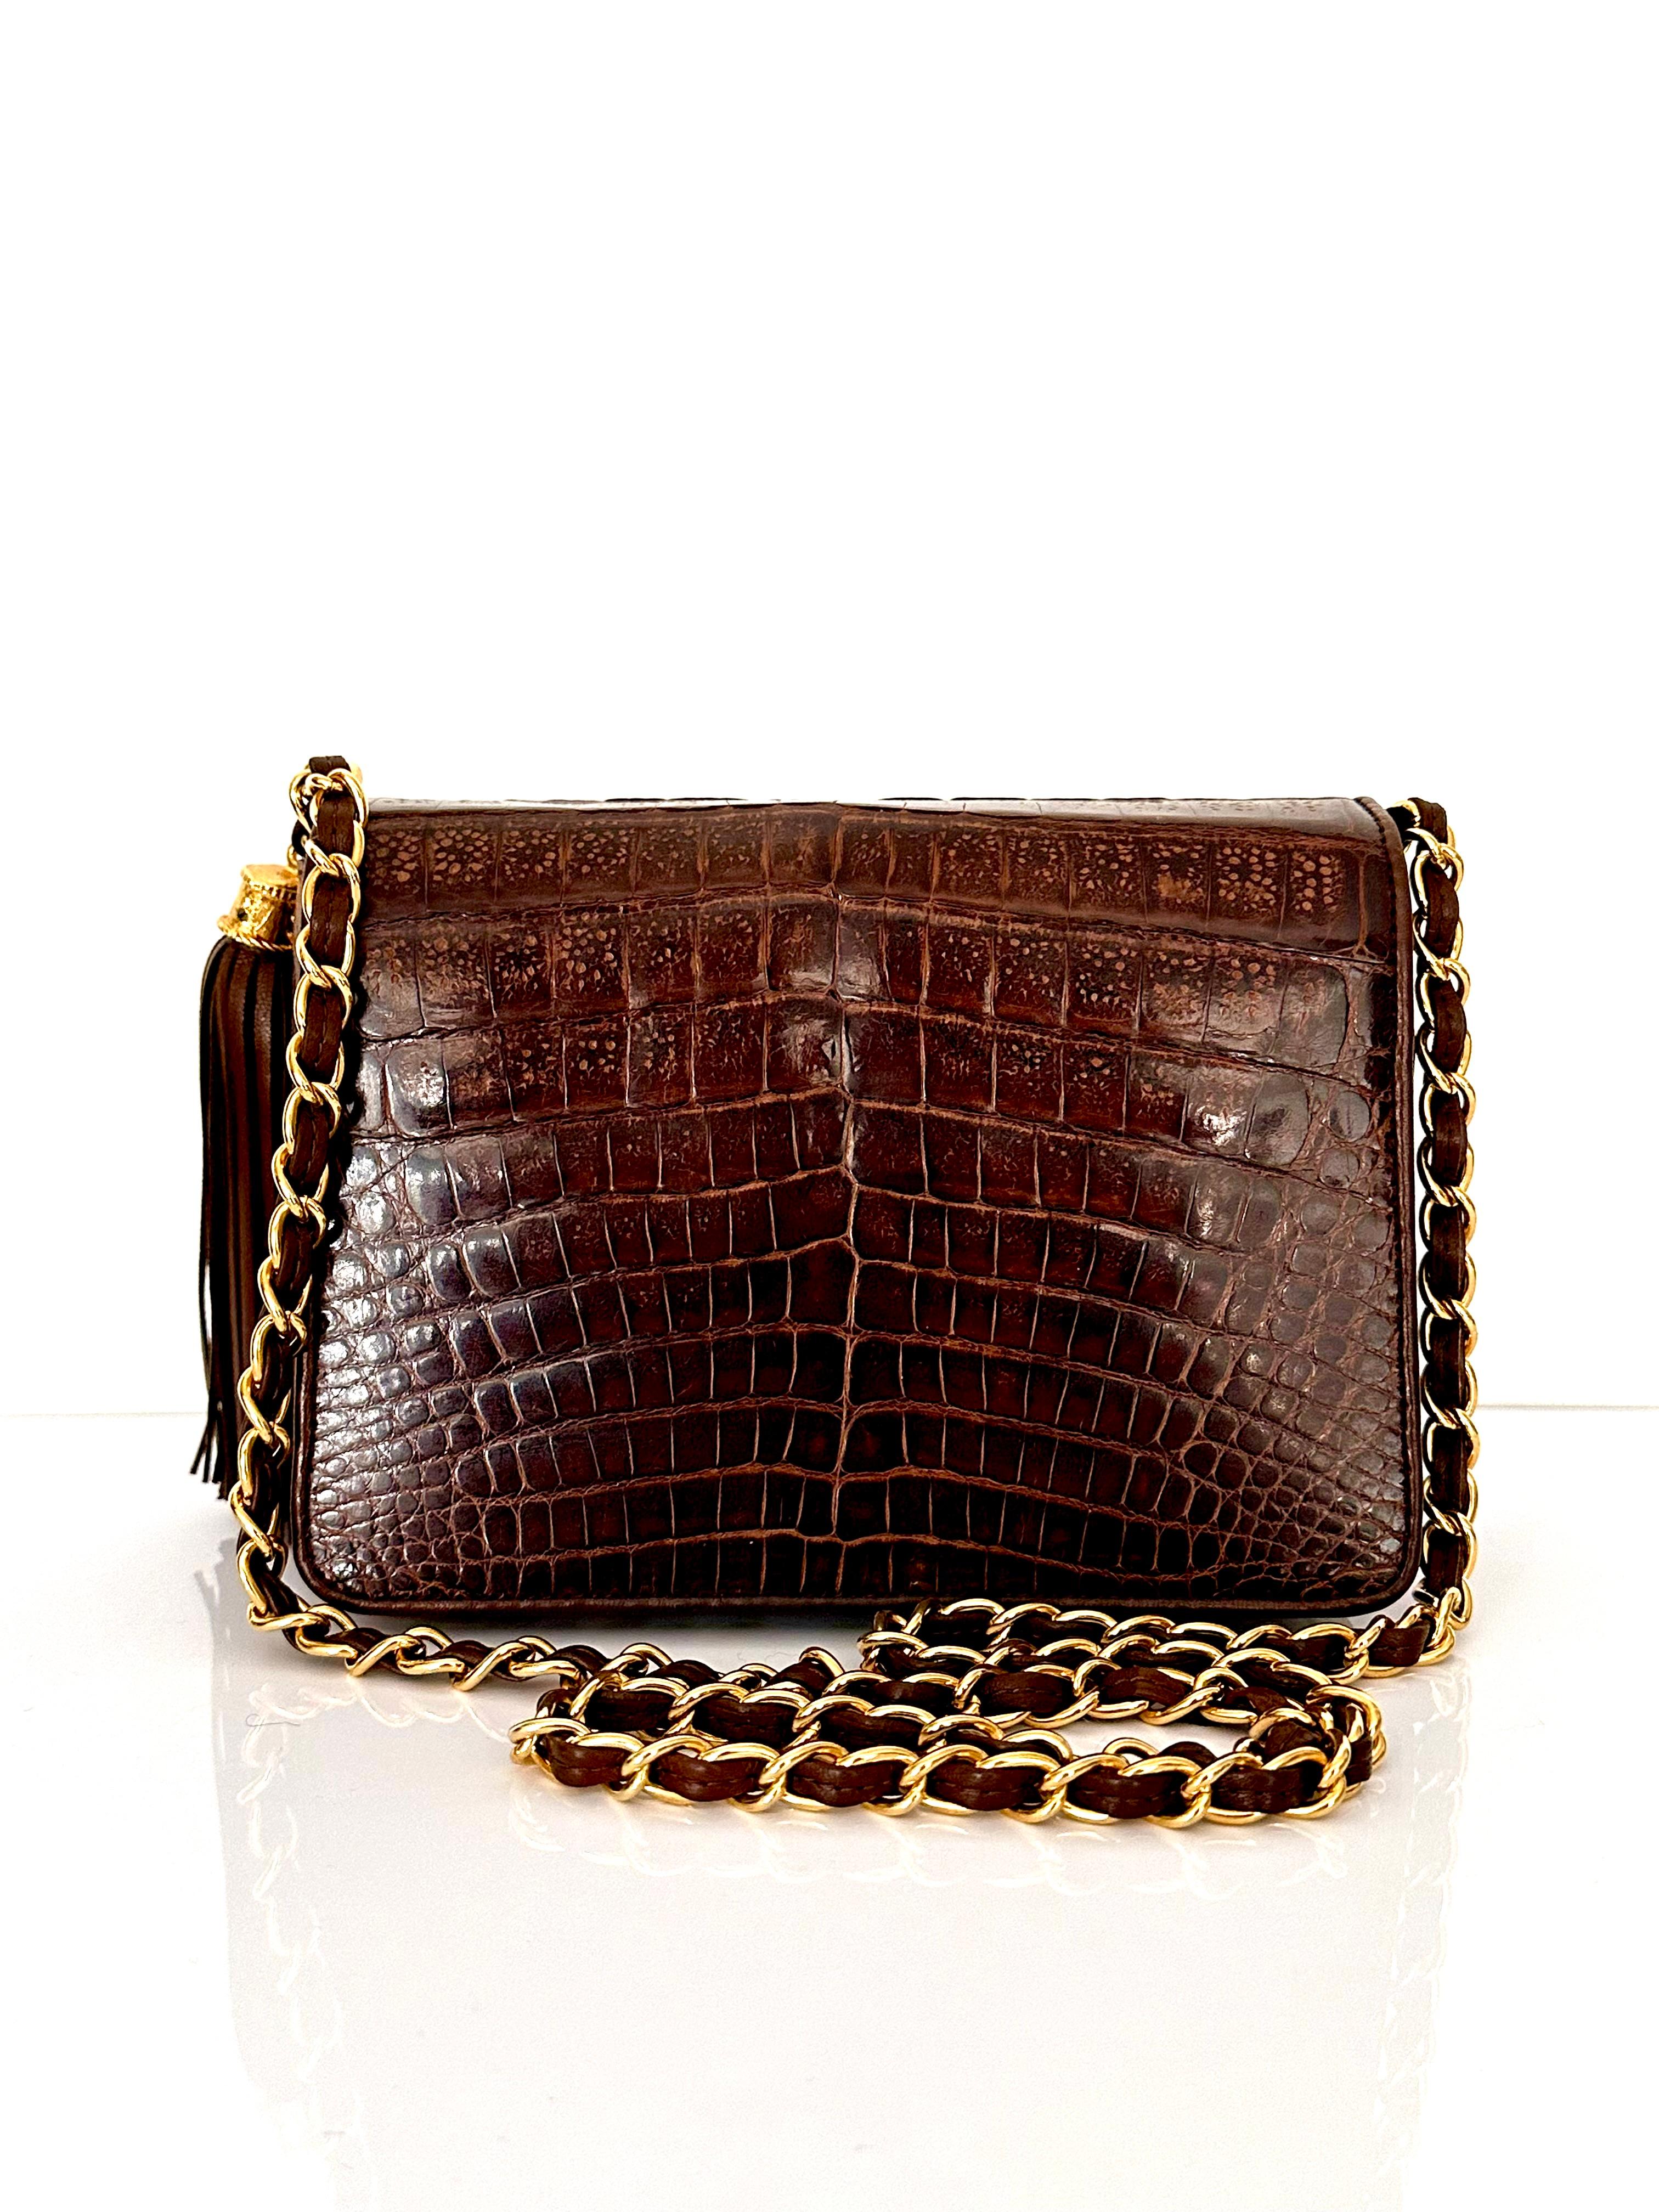 Disponible à l'achat, ce sac Chanel vintage est absolument magnifique et rare ! Fabriquée en crocodile véritable, cette magnifique pièce est dotée d'une quincaillerie plaquée or 24kt ! Vous remarquerez sur les photos que non seulement le crocodile